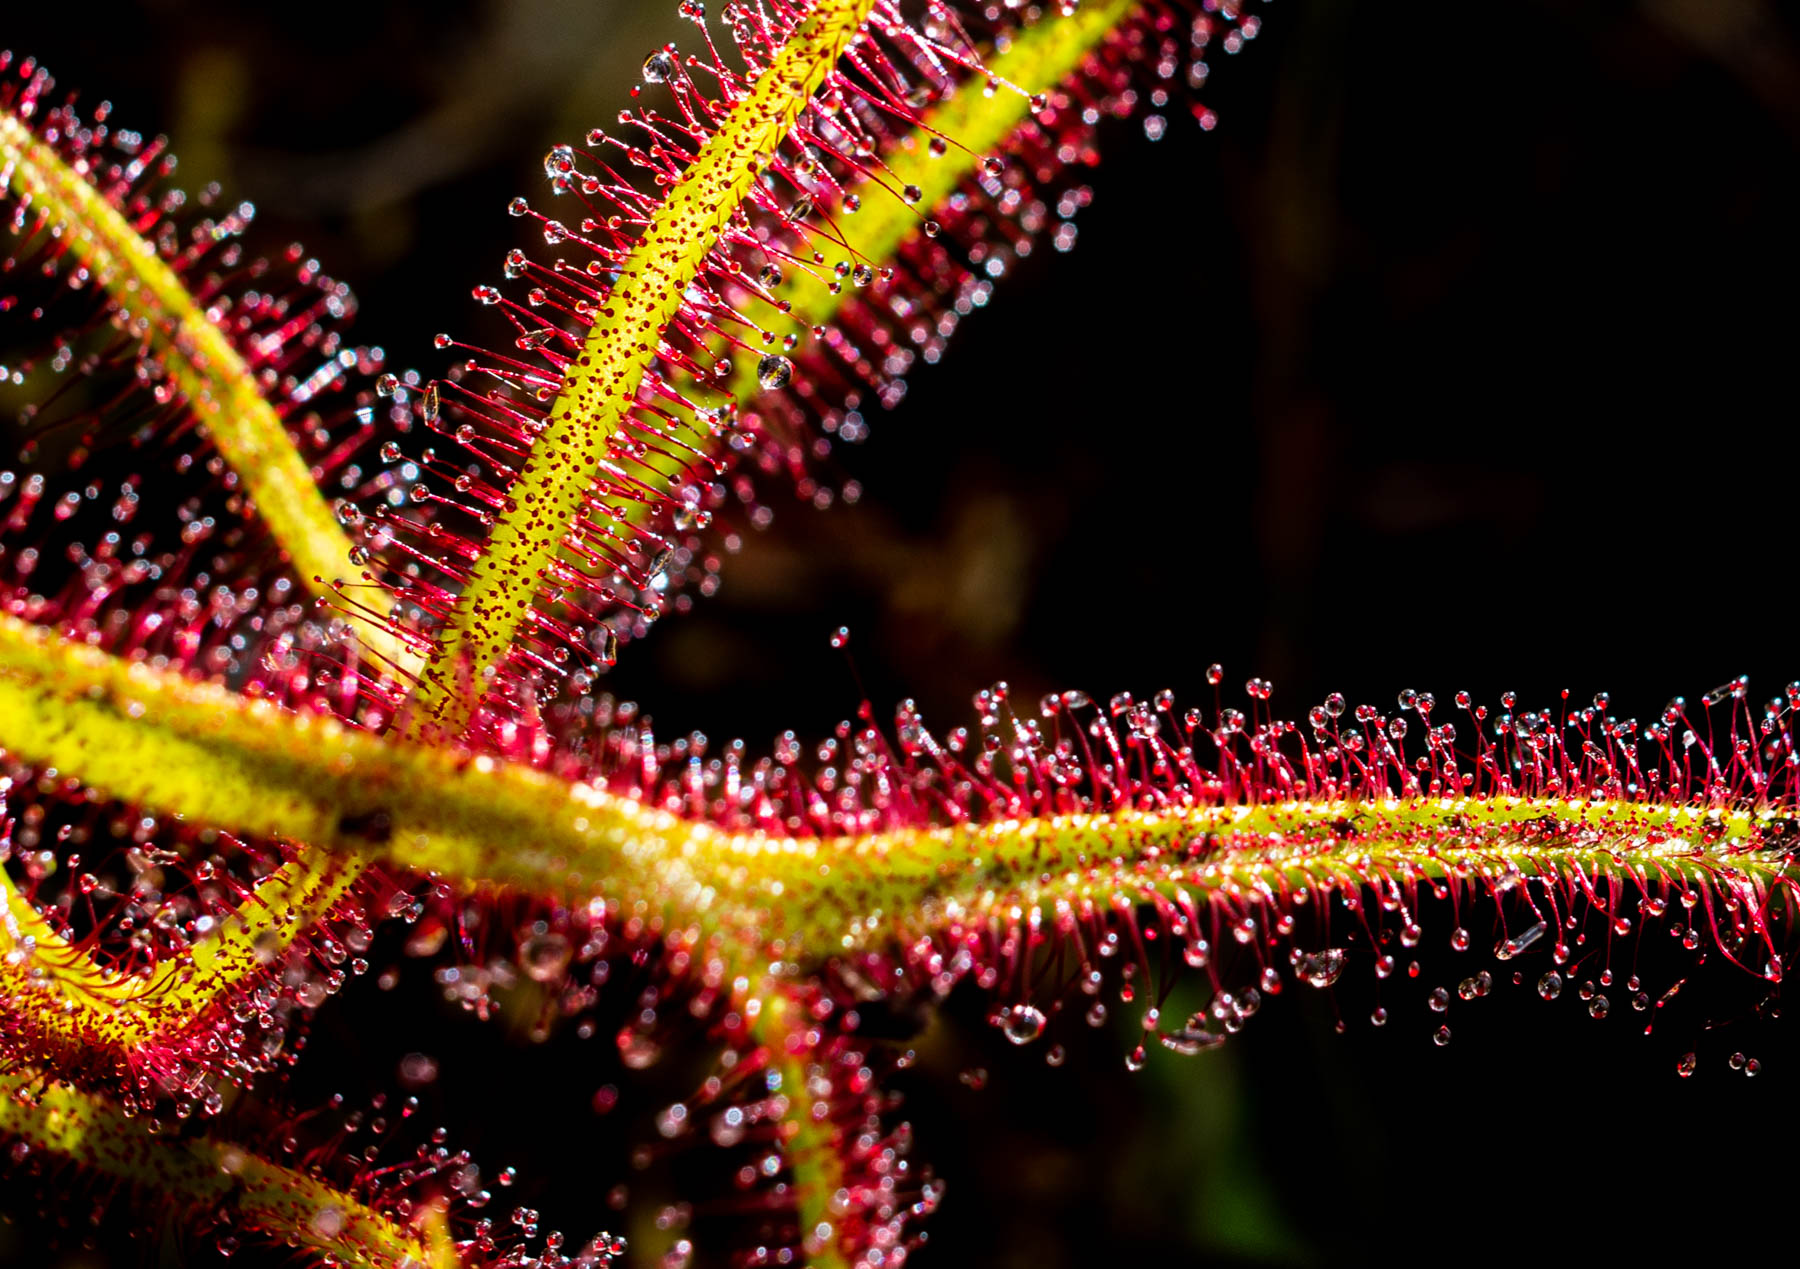 close-up van een plant met groene stengels waaraan rode haren zitten met druppels eraan